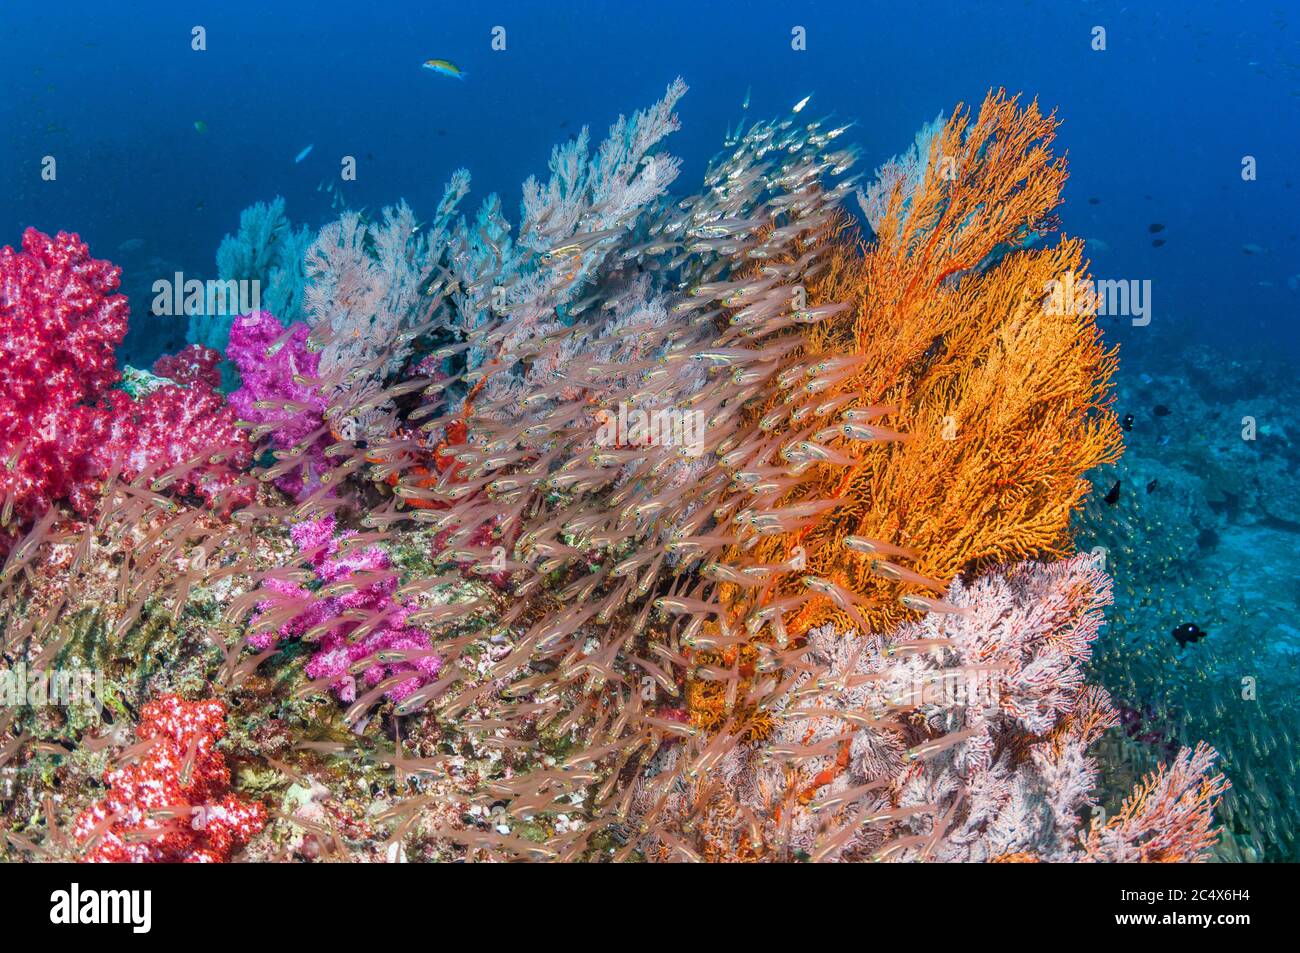 Los fanáticos del mar gorgonian [Melithaea sp.] y los corales blandos [Dendronephthya sp.] con una gran escuela de peces carniceros luminosos [Rhabdamia gralilis]. Andaman se Foto de stock